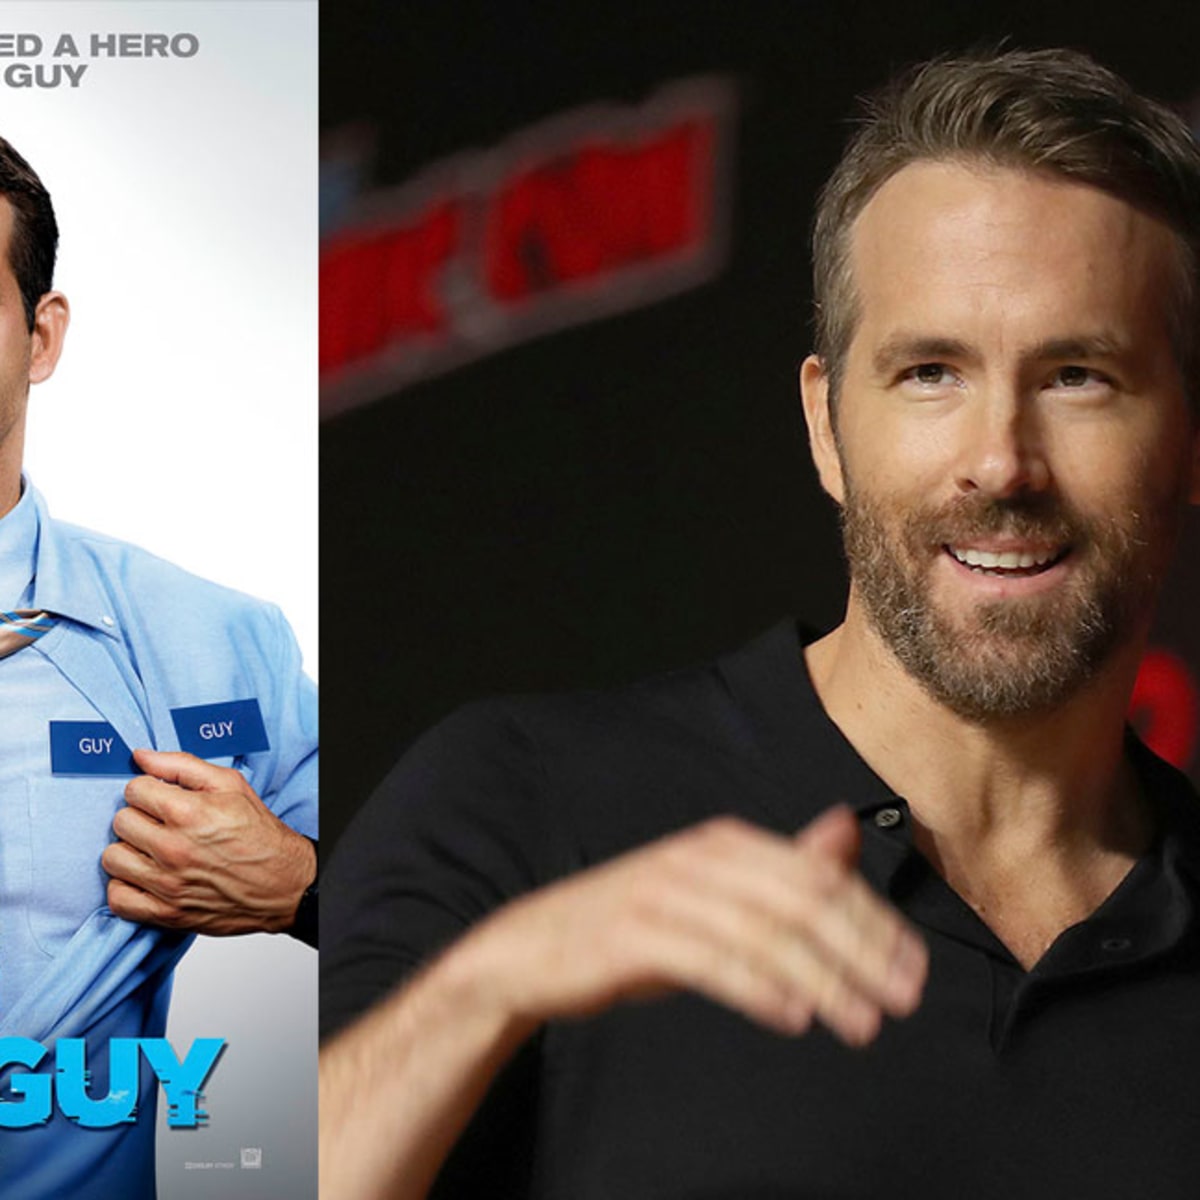 Free Guy Netflix release date, Ryan Reynolds film's cast, trailer